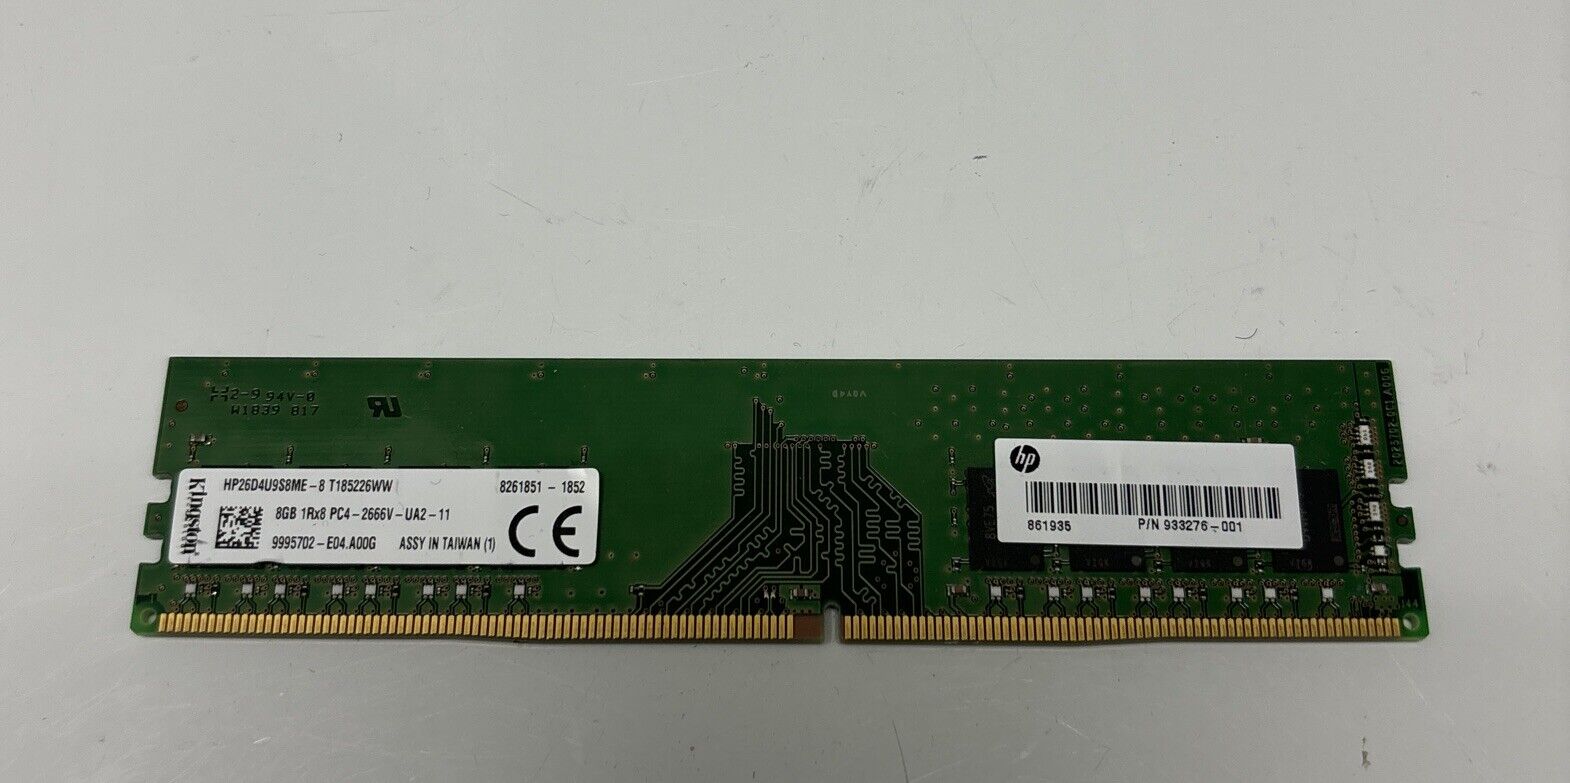 Kingston 8GB RAM Stick - HP26D4U9S8ME-8 - 1Rx8 PC4 - 2666V-UA2-11 HP 933376-001